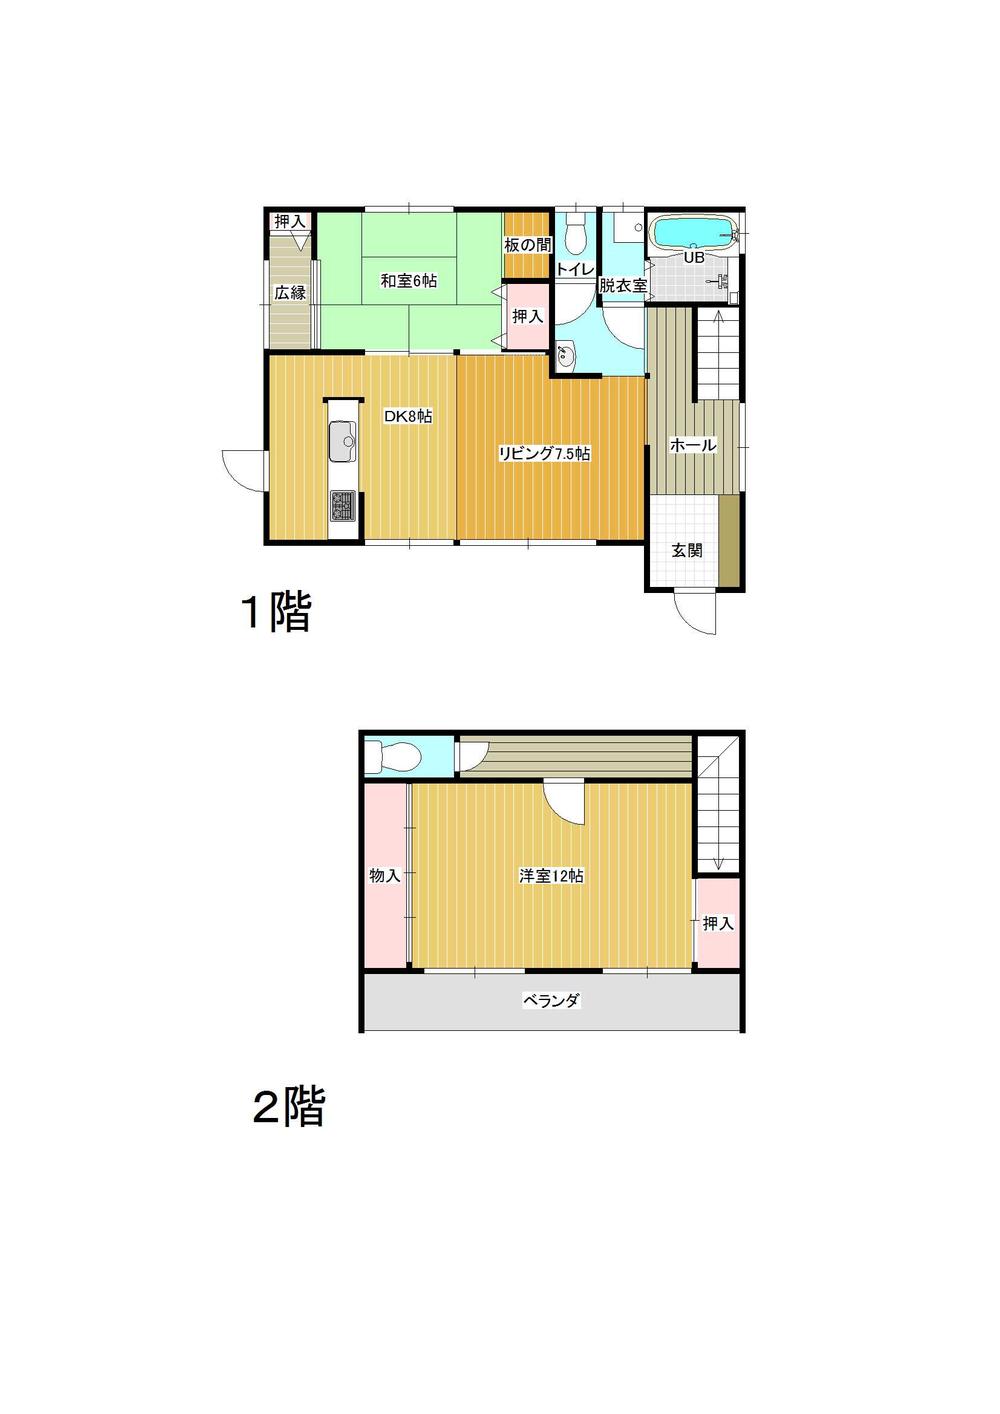 Floor plan. 12.8 million yen, 2LDK, Land area 200.68 sq m , Building area 92.74 sq m